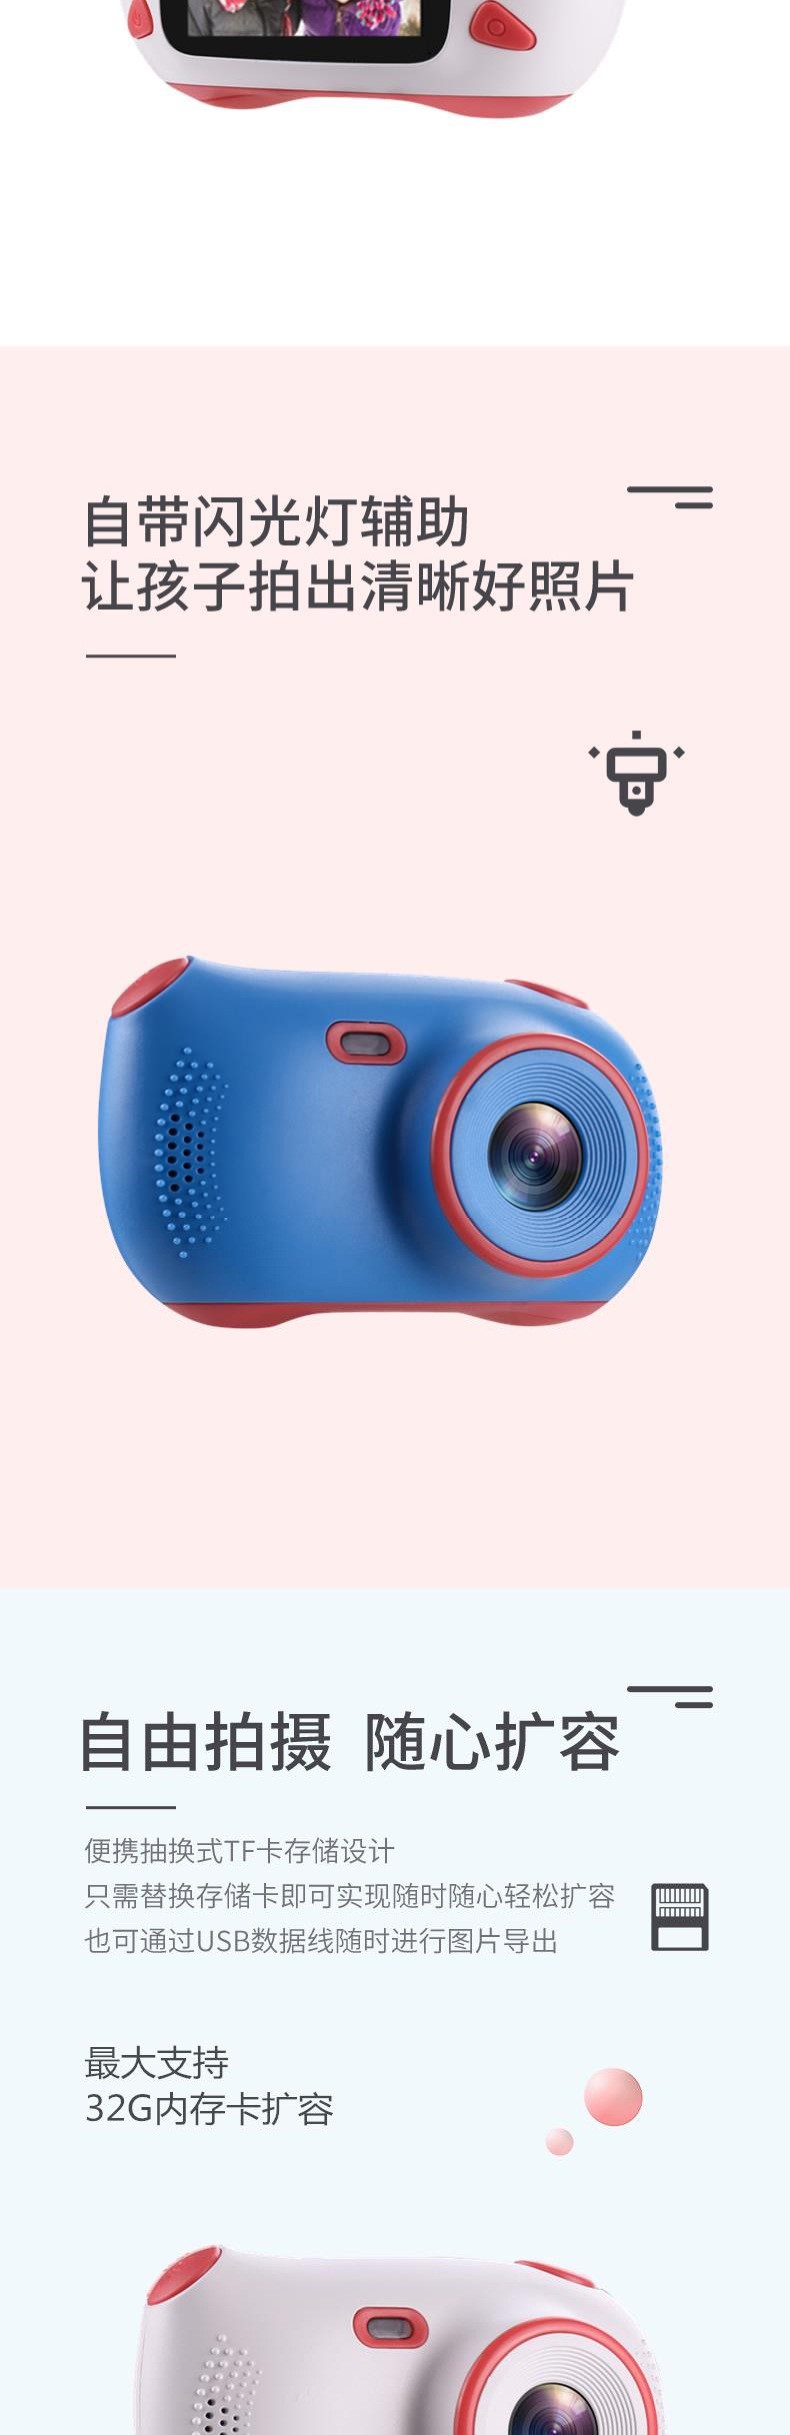 新款爆款儿童卡通相机高清数码相机防摔摄像机玩具儿童迷你相机详情图7